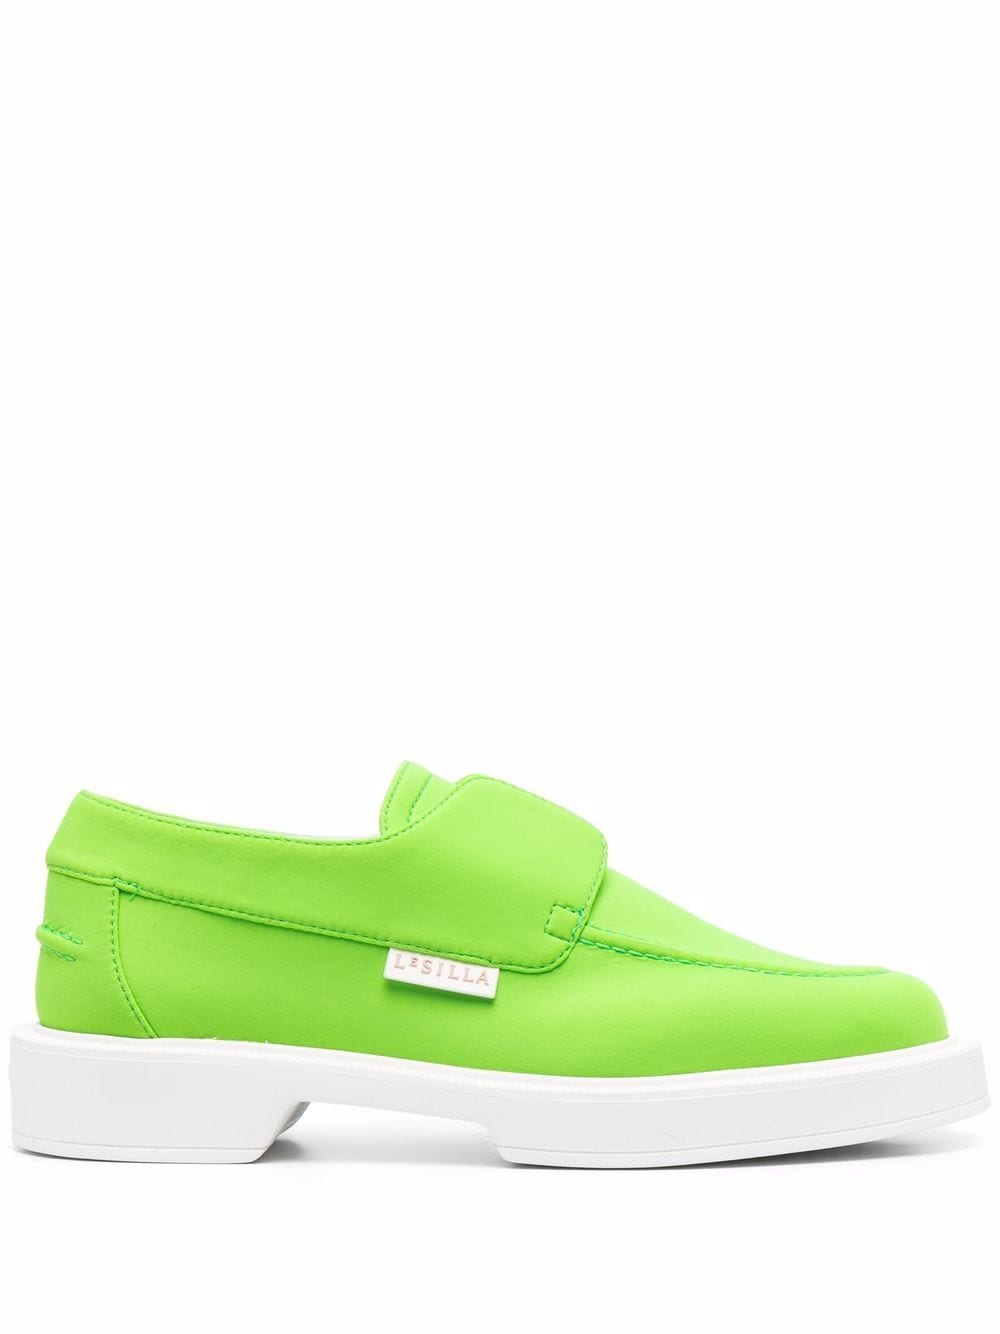 Le Silla slip-on leather loafers - Green von Le Silla